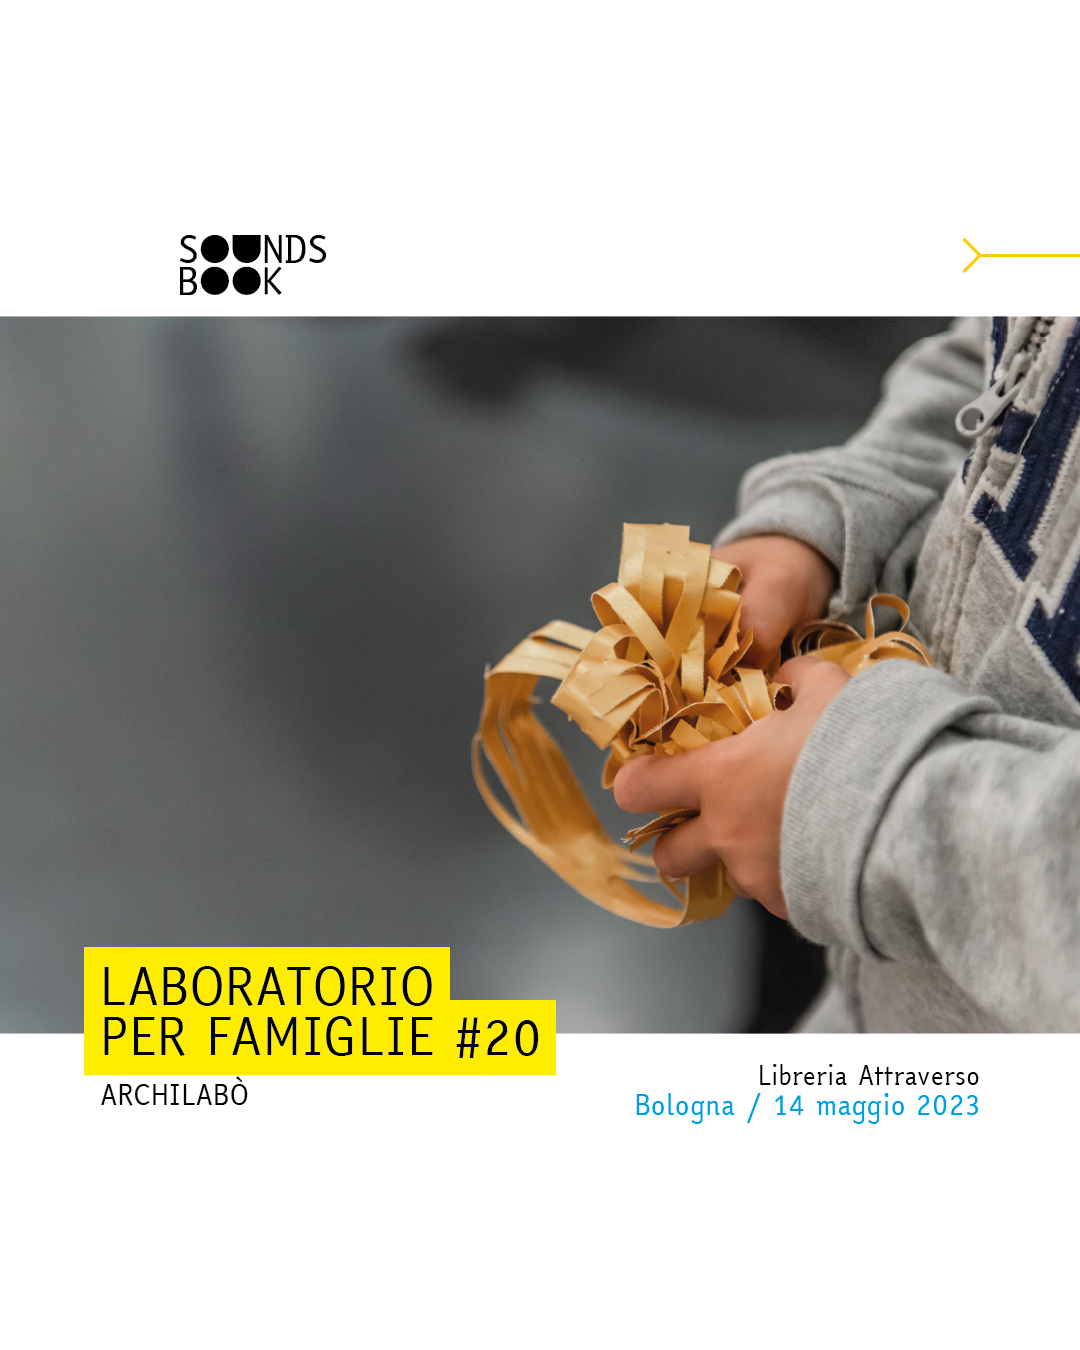 https://www.archilabo.org/wp-content/uploads/2023/06/POST-Laboratorio-per-famiglie-20-01.png